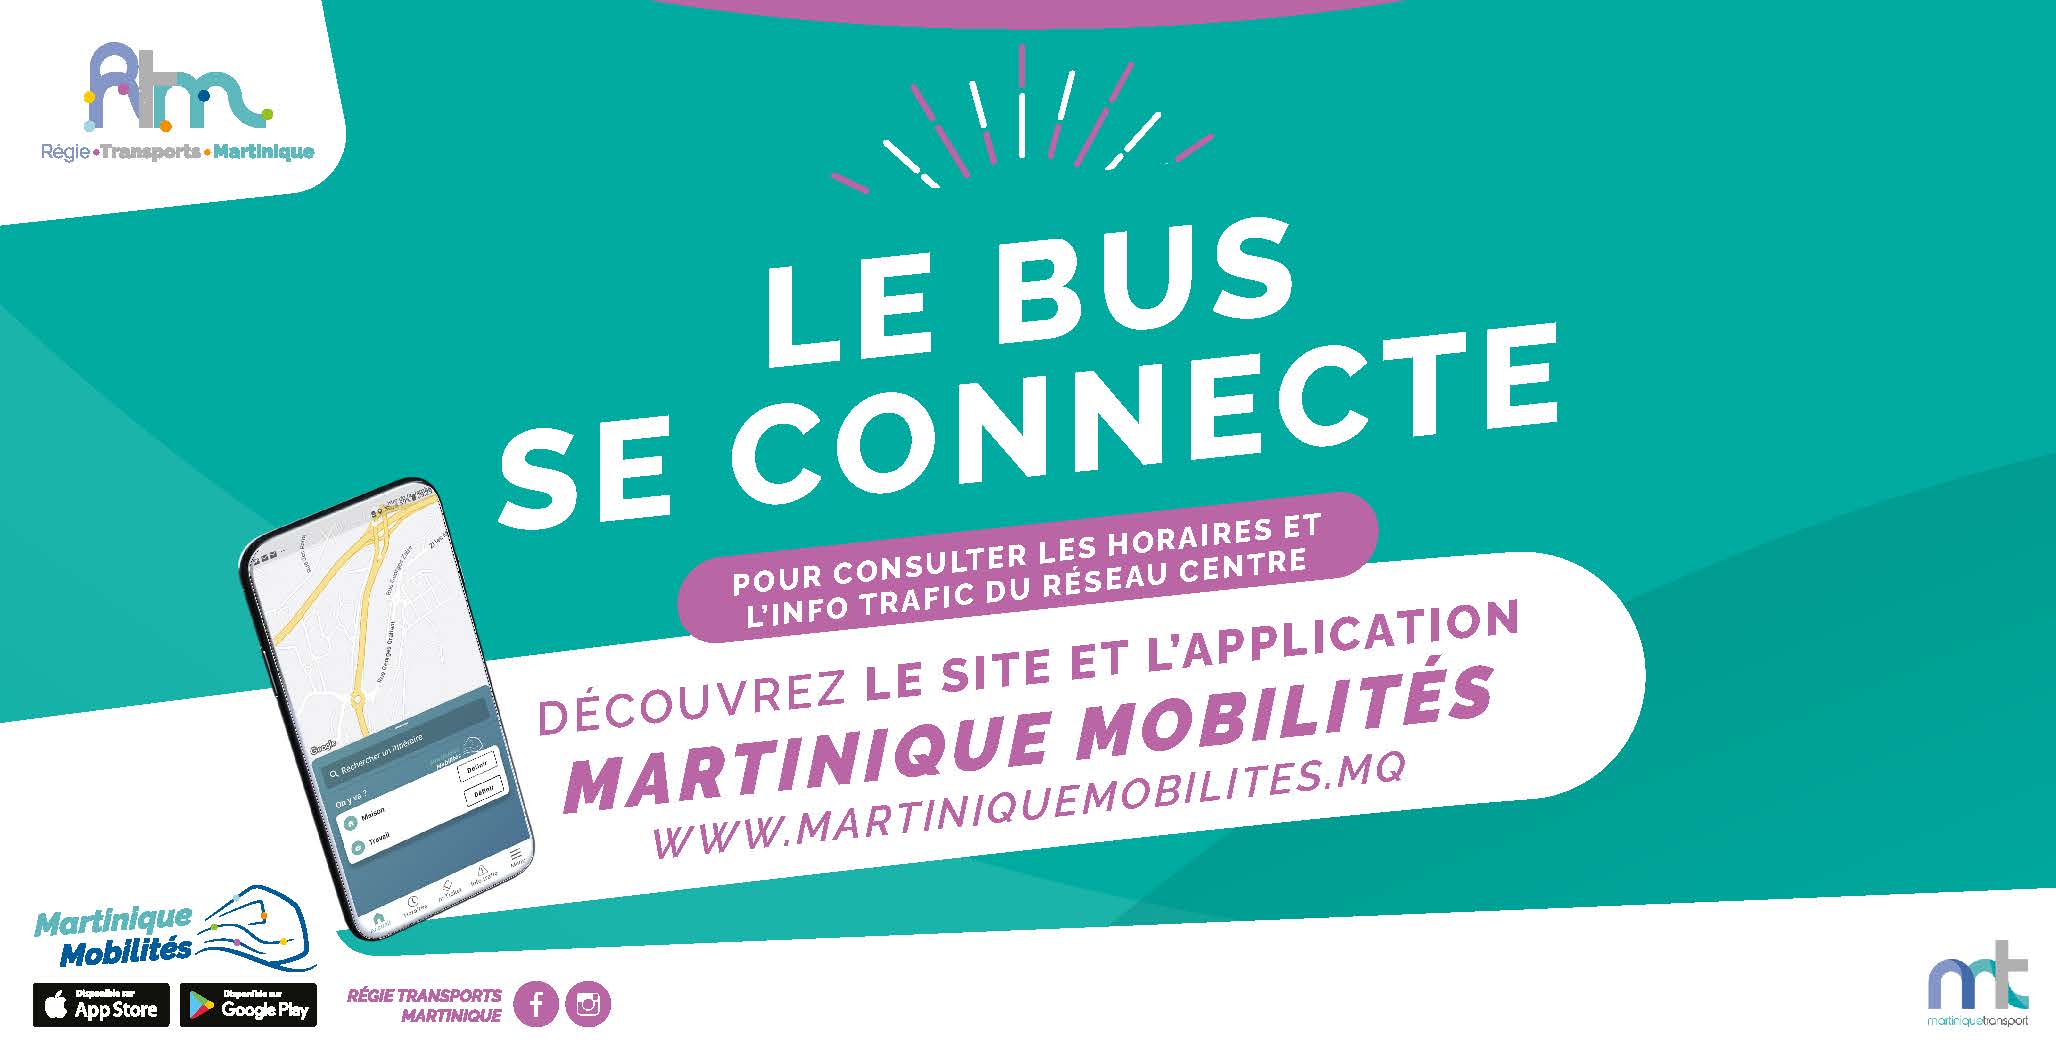     « Martinique Mobilités » : une application de Martinique Transport

